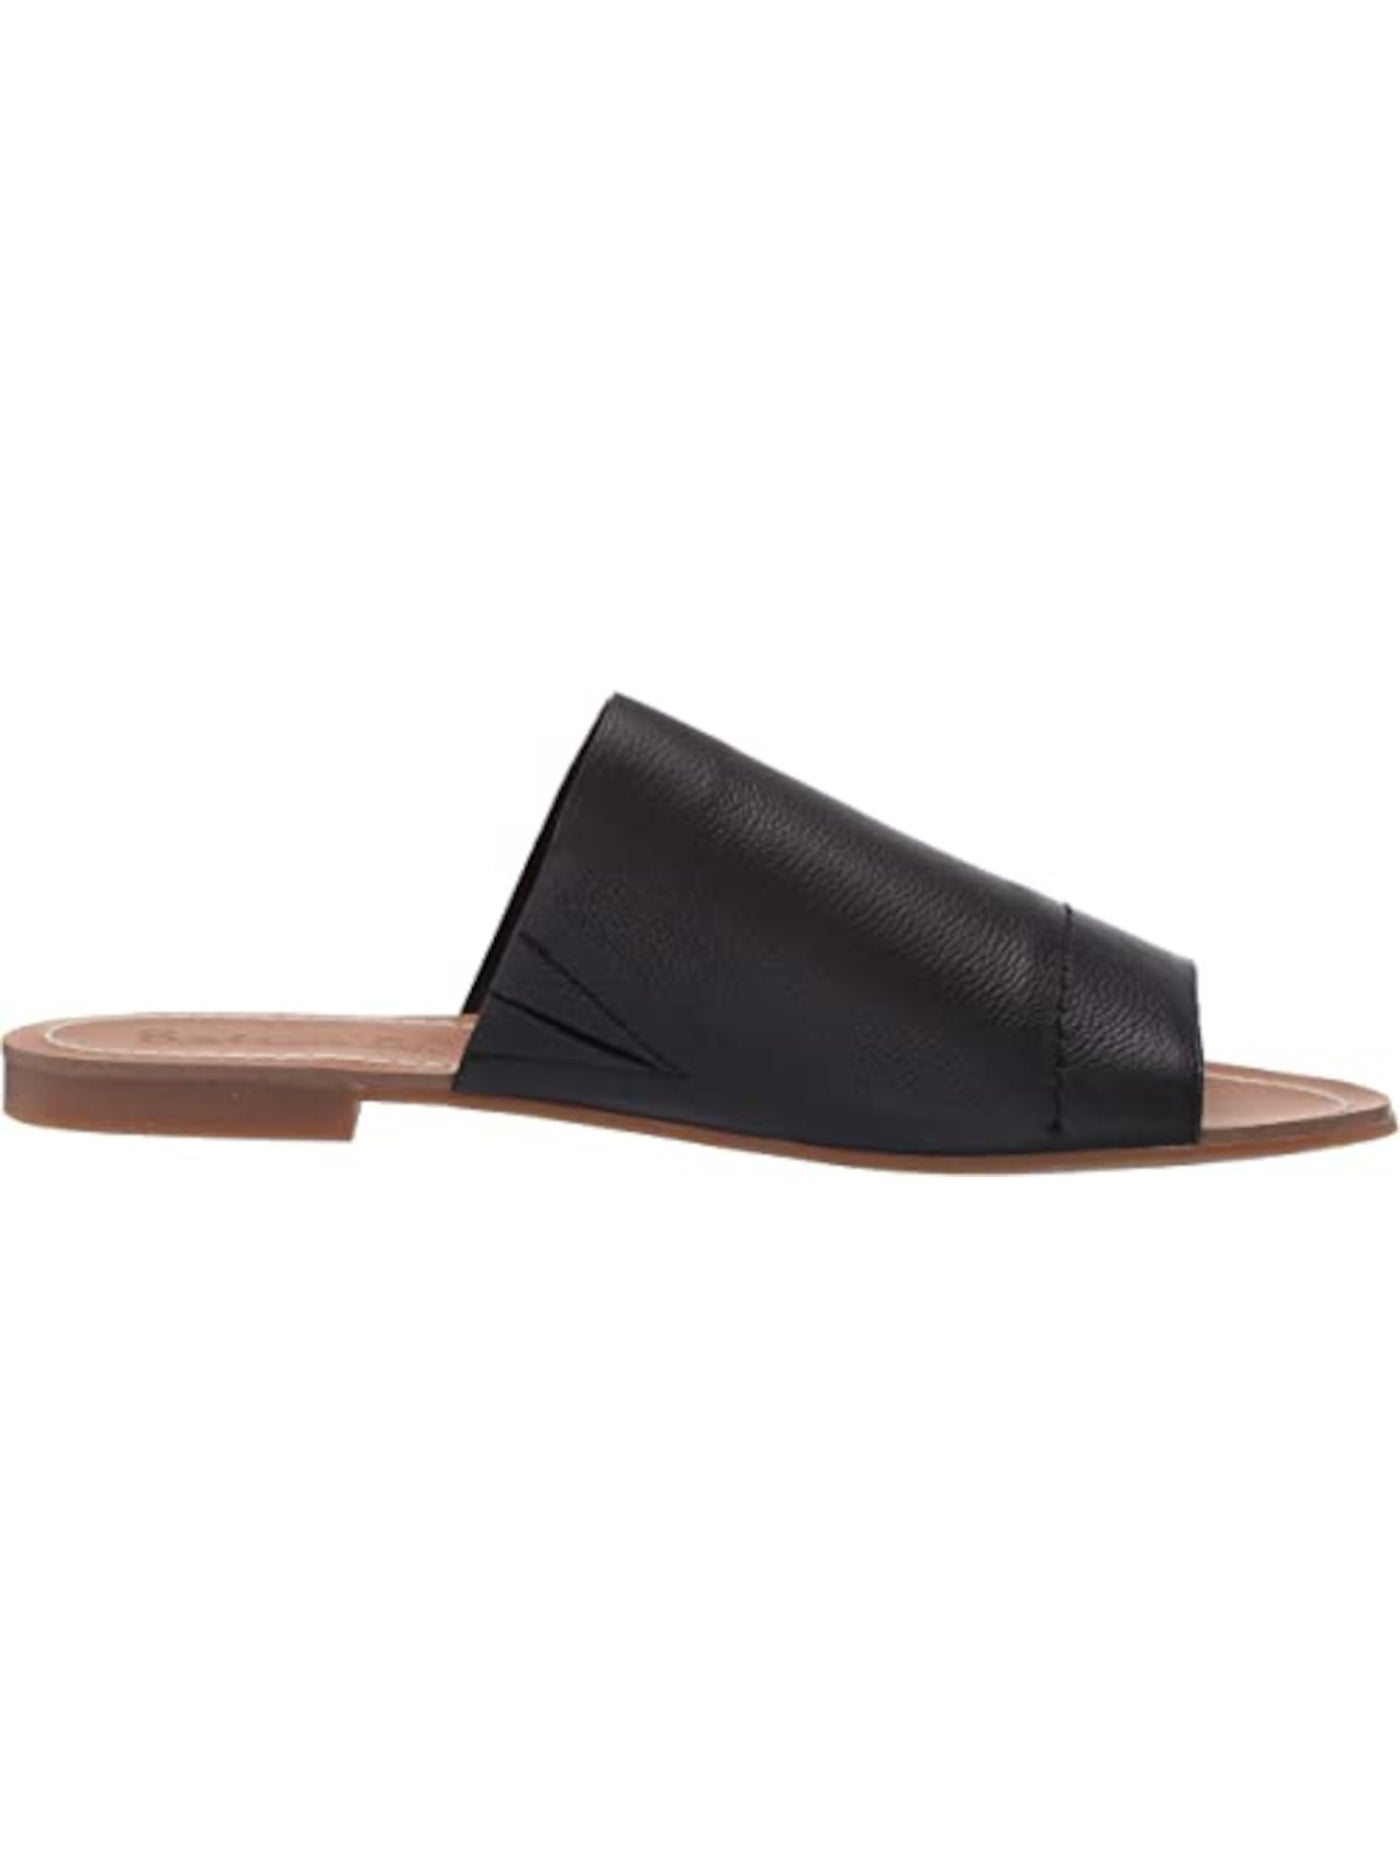 SPLENDID Womens Black Goring Mavis Round Toe Slip On Leather Slide Sandals Shoes 6.5 M